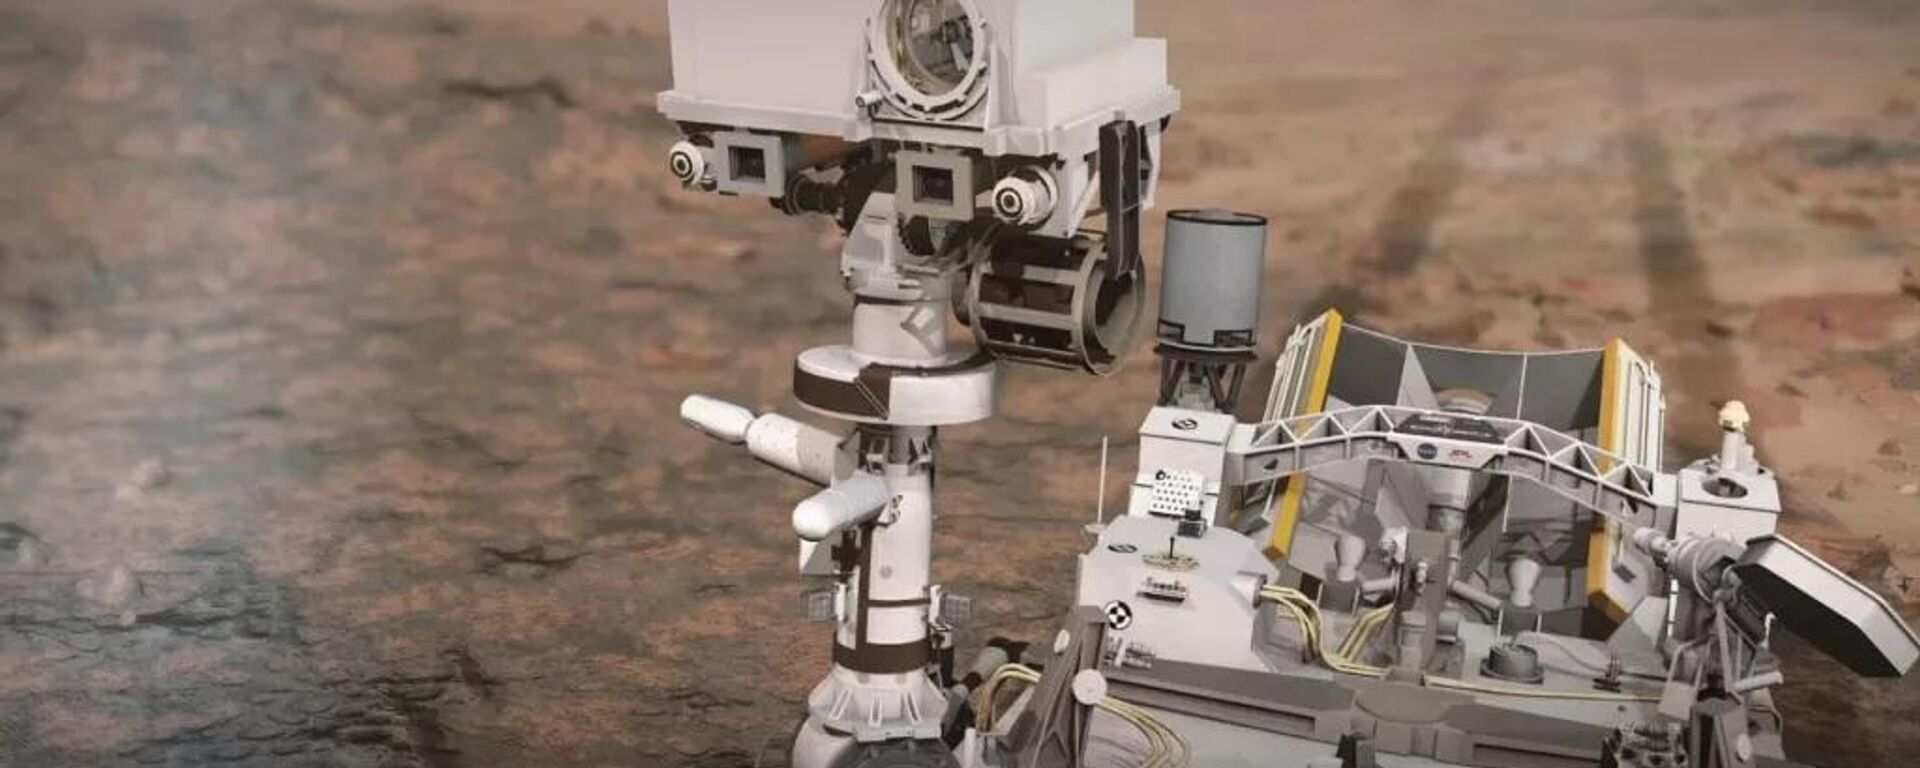 Rover Perseverance gravou áudio em Marte utilizando o sitema SuperCam - Sputnik Brasil, 1920, 01.04.2022